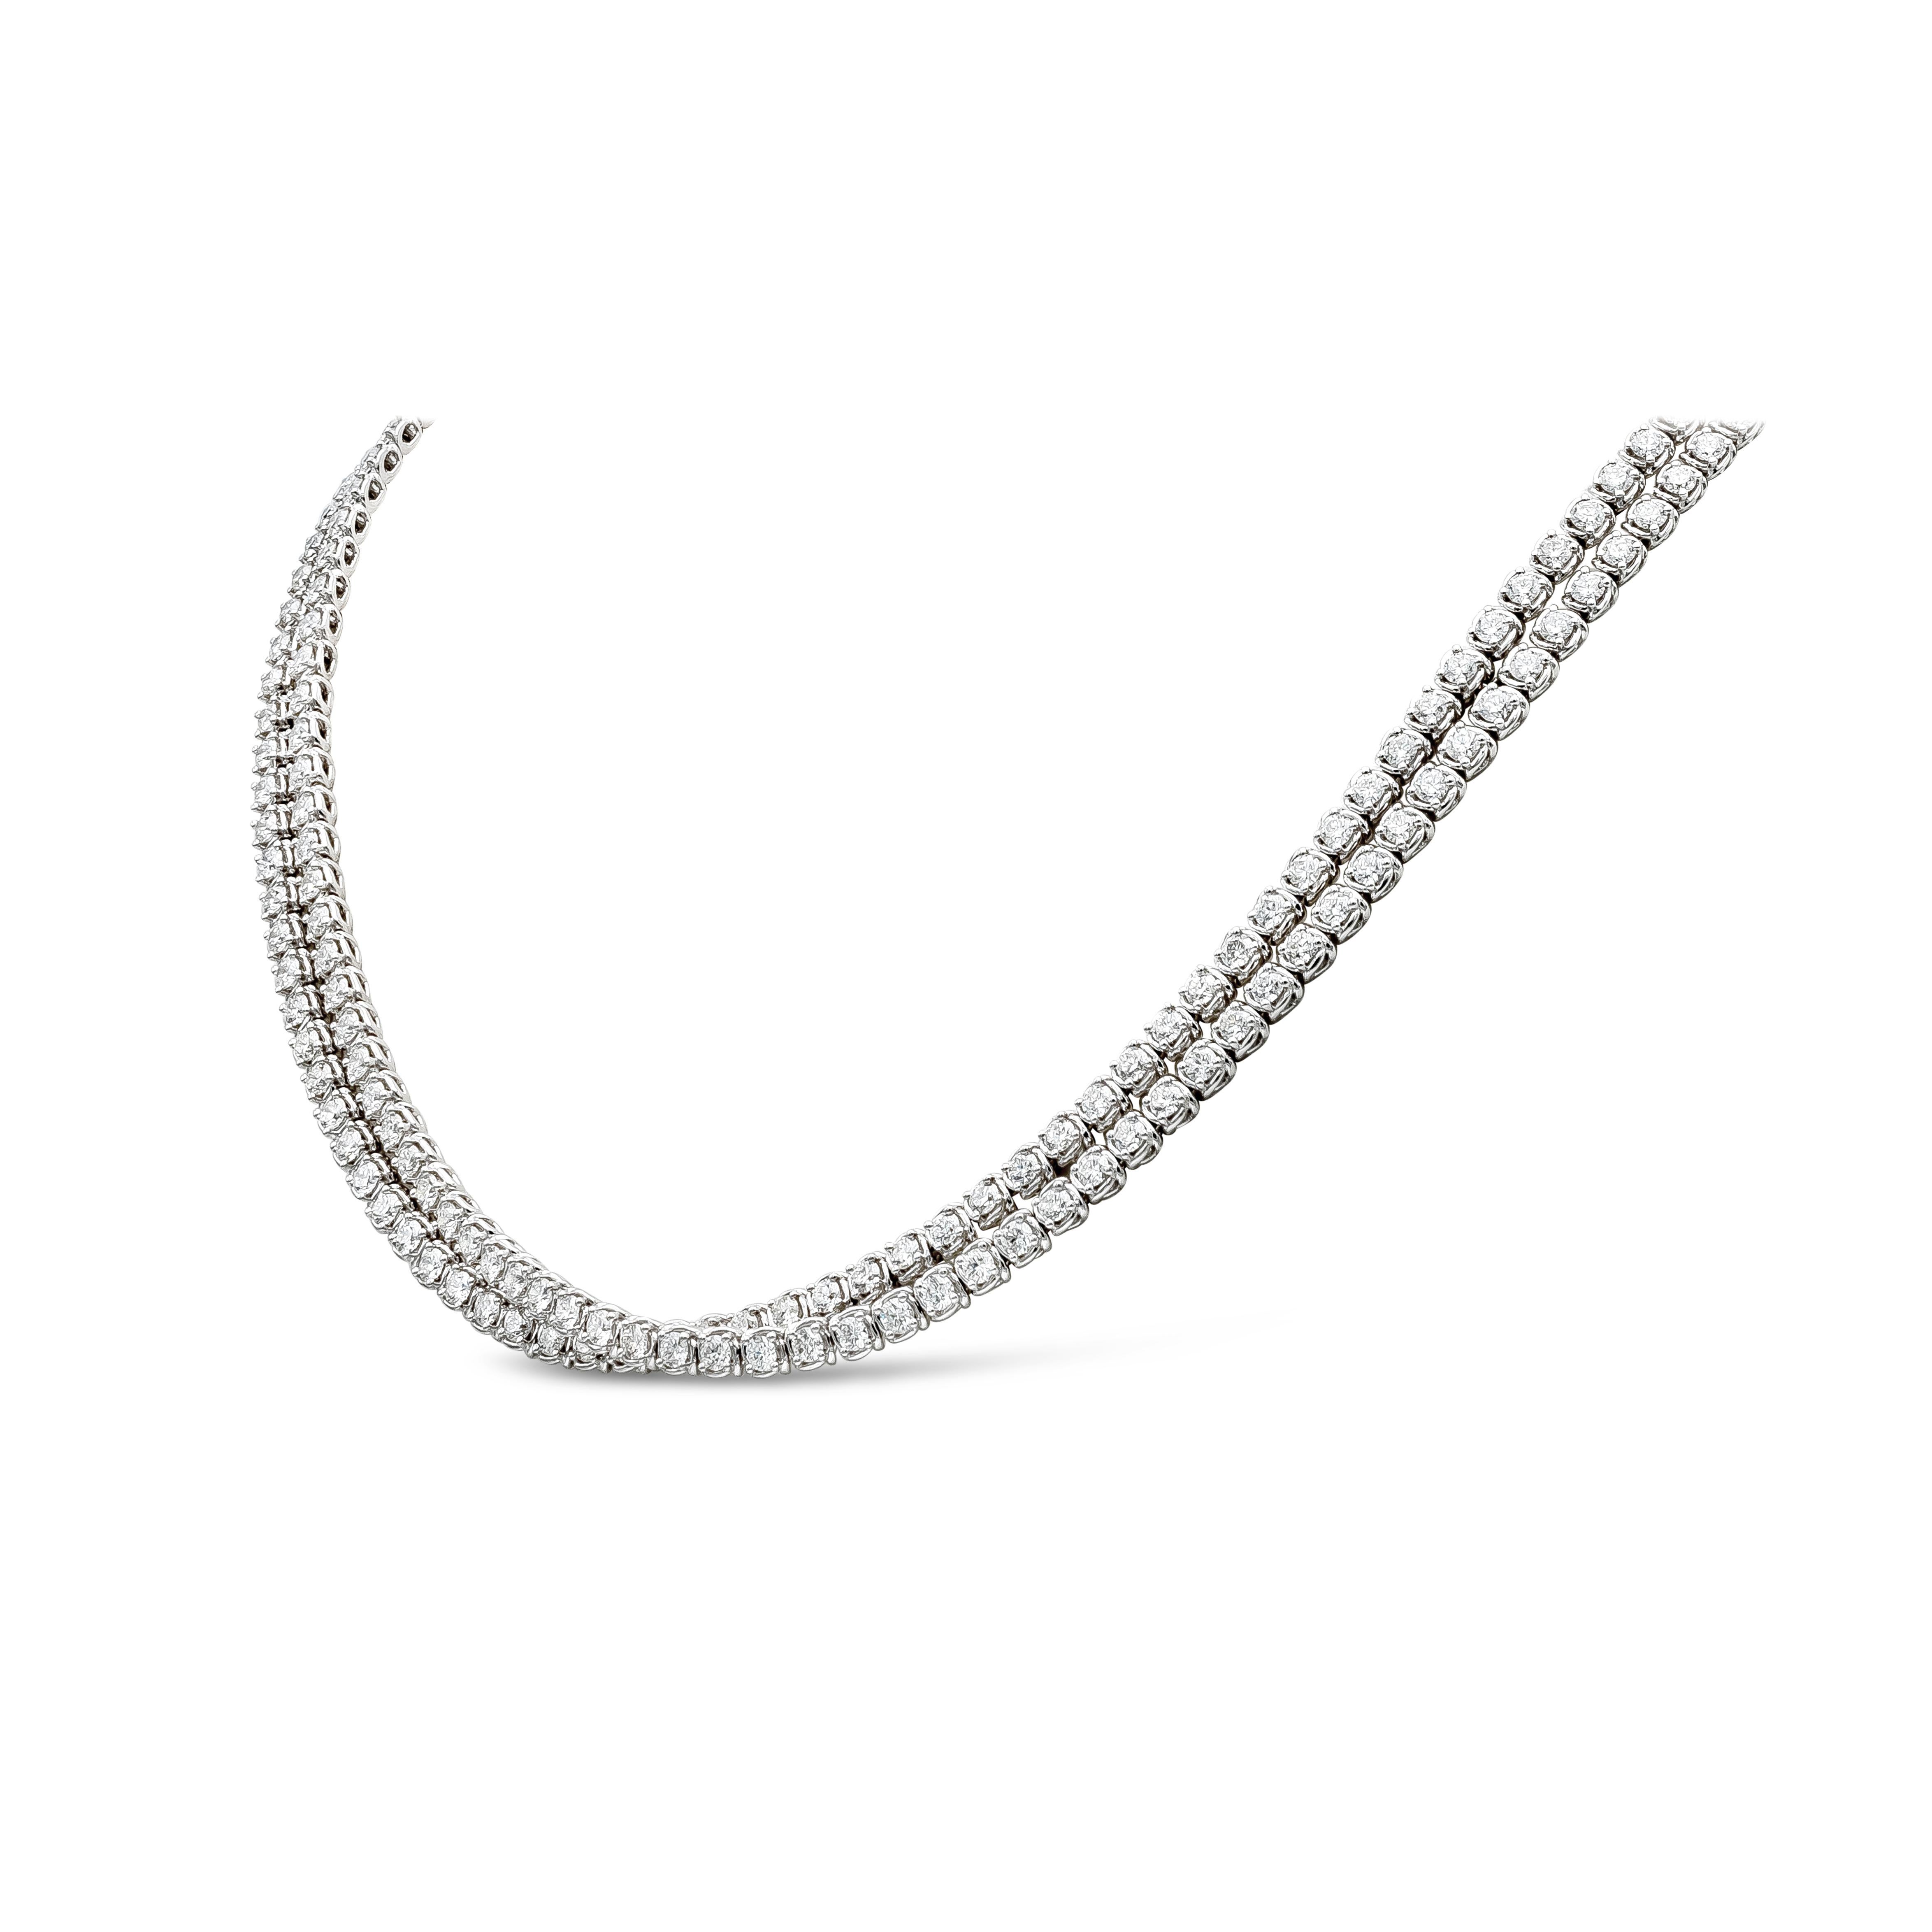 Eine modische und elegante Crossover-Tennis-Halskette mit 238 runden Brillanten. Die Diamanten wiegen insgesamt 11,90 Karat, Farbe F-G, Reinheit VS-SI. Hergestellt mit 18K Weißgold. 16 Zoll in der Länge.

Roman Malakov ist ein Unternehmen, das sich